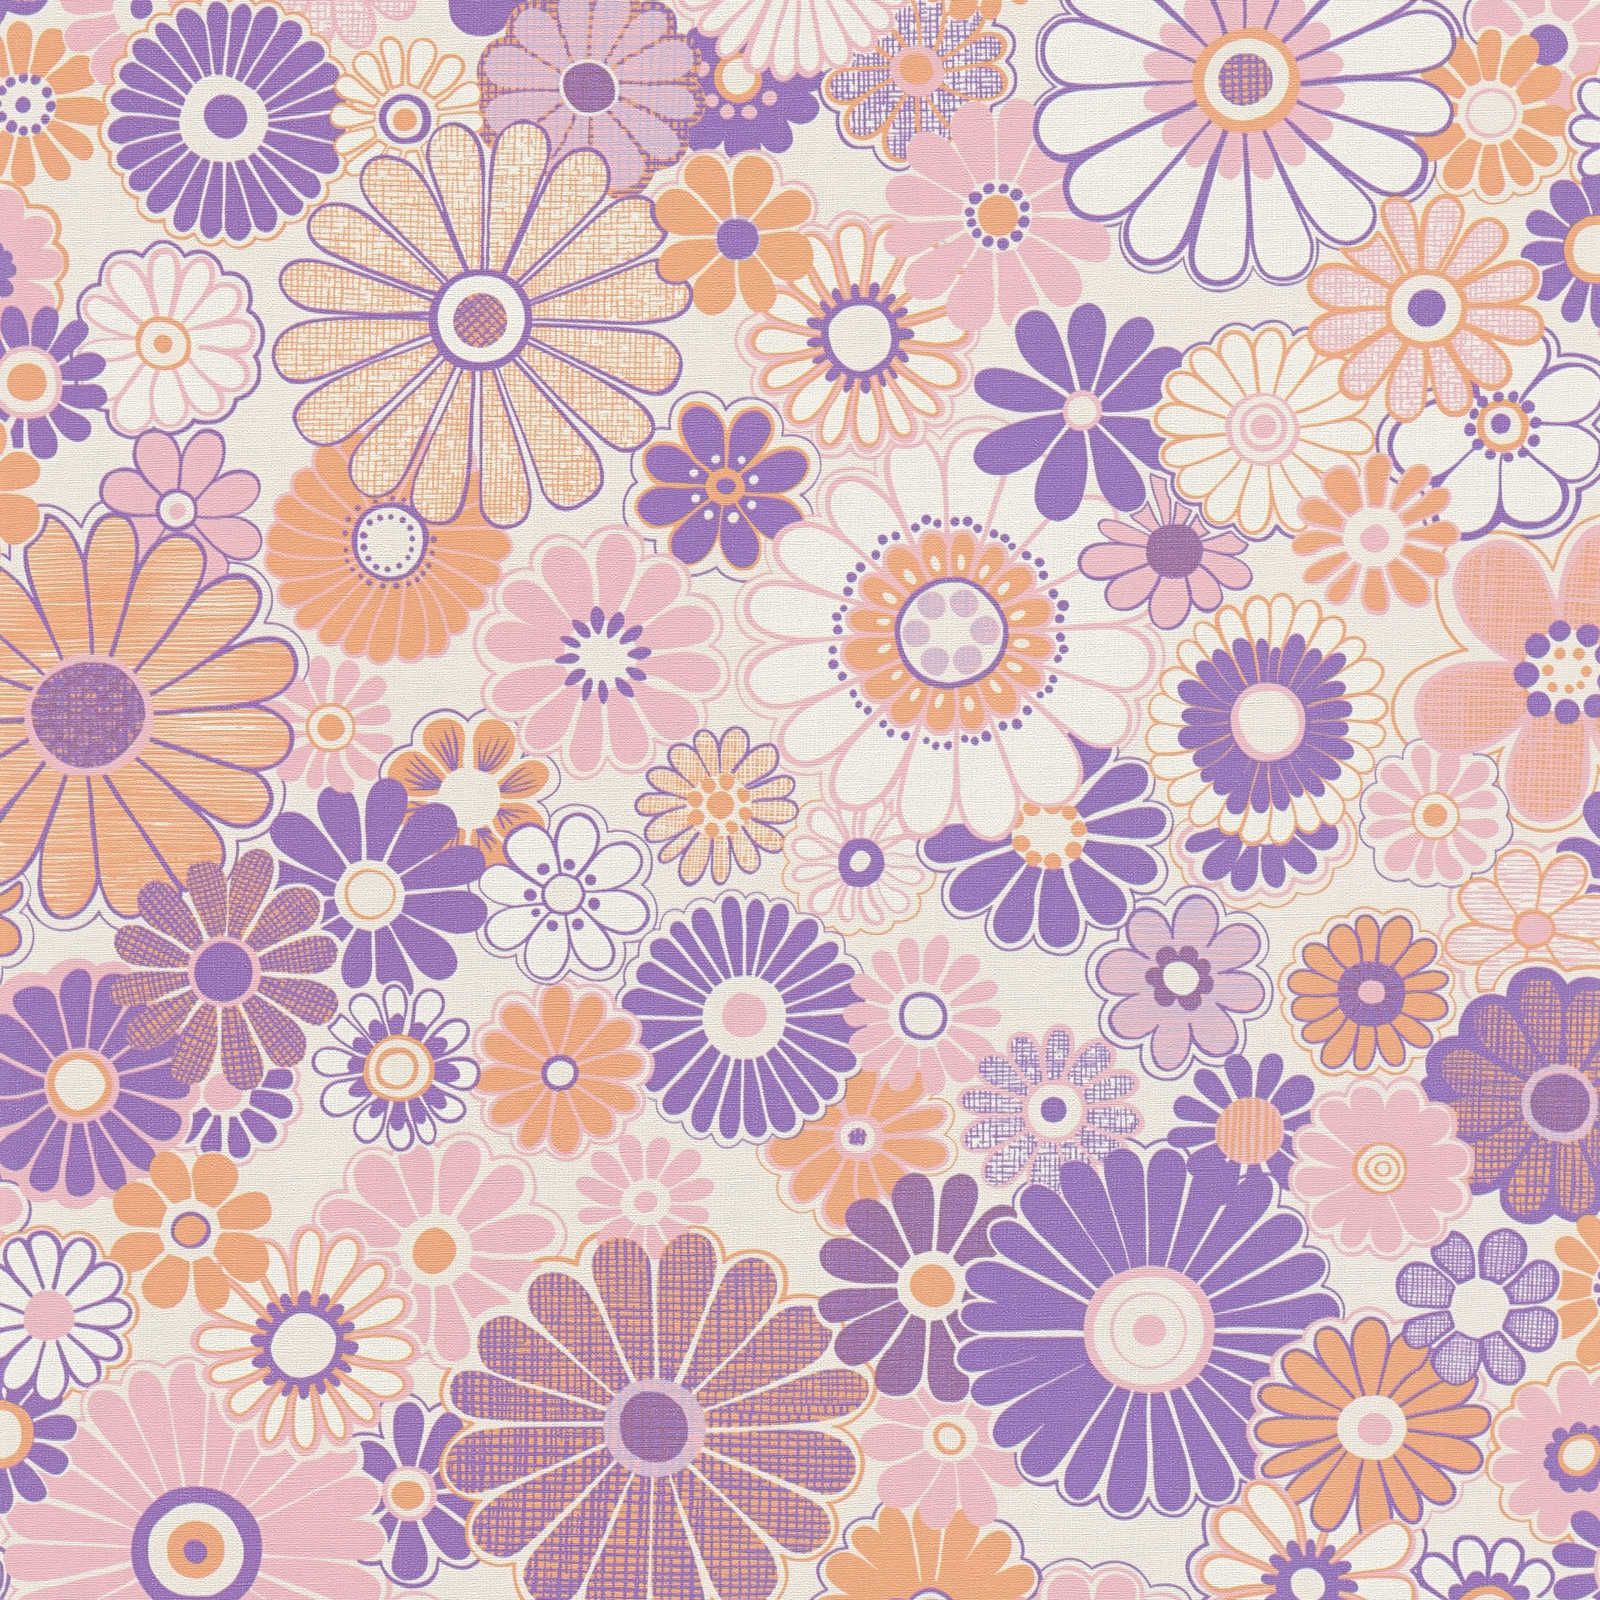 Vliesbehang met lichte structuur en bloemenpatroon - paars, oranje, roze
